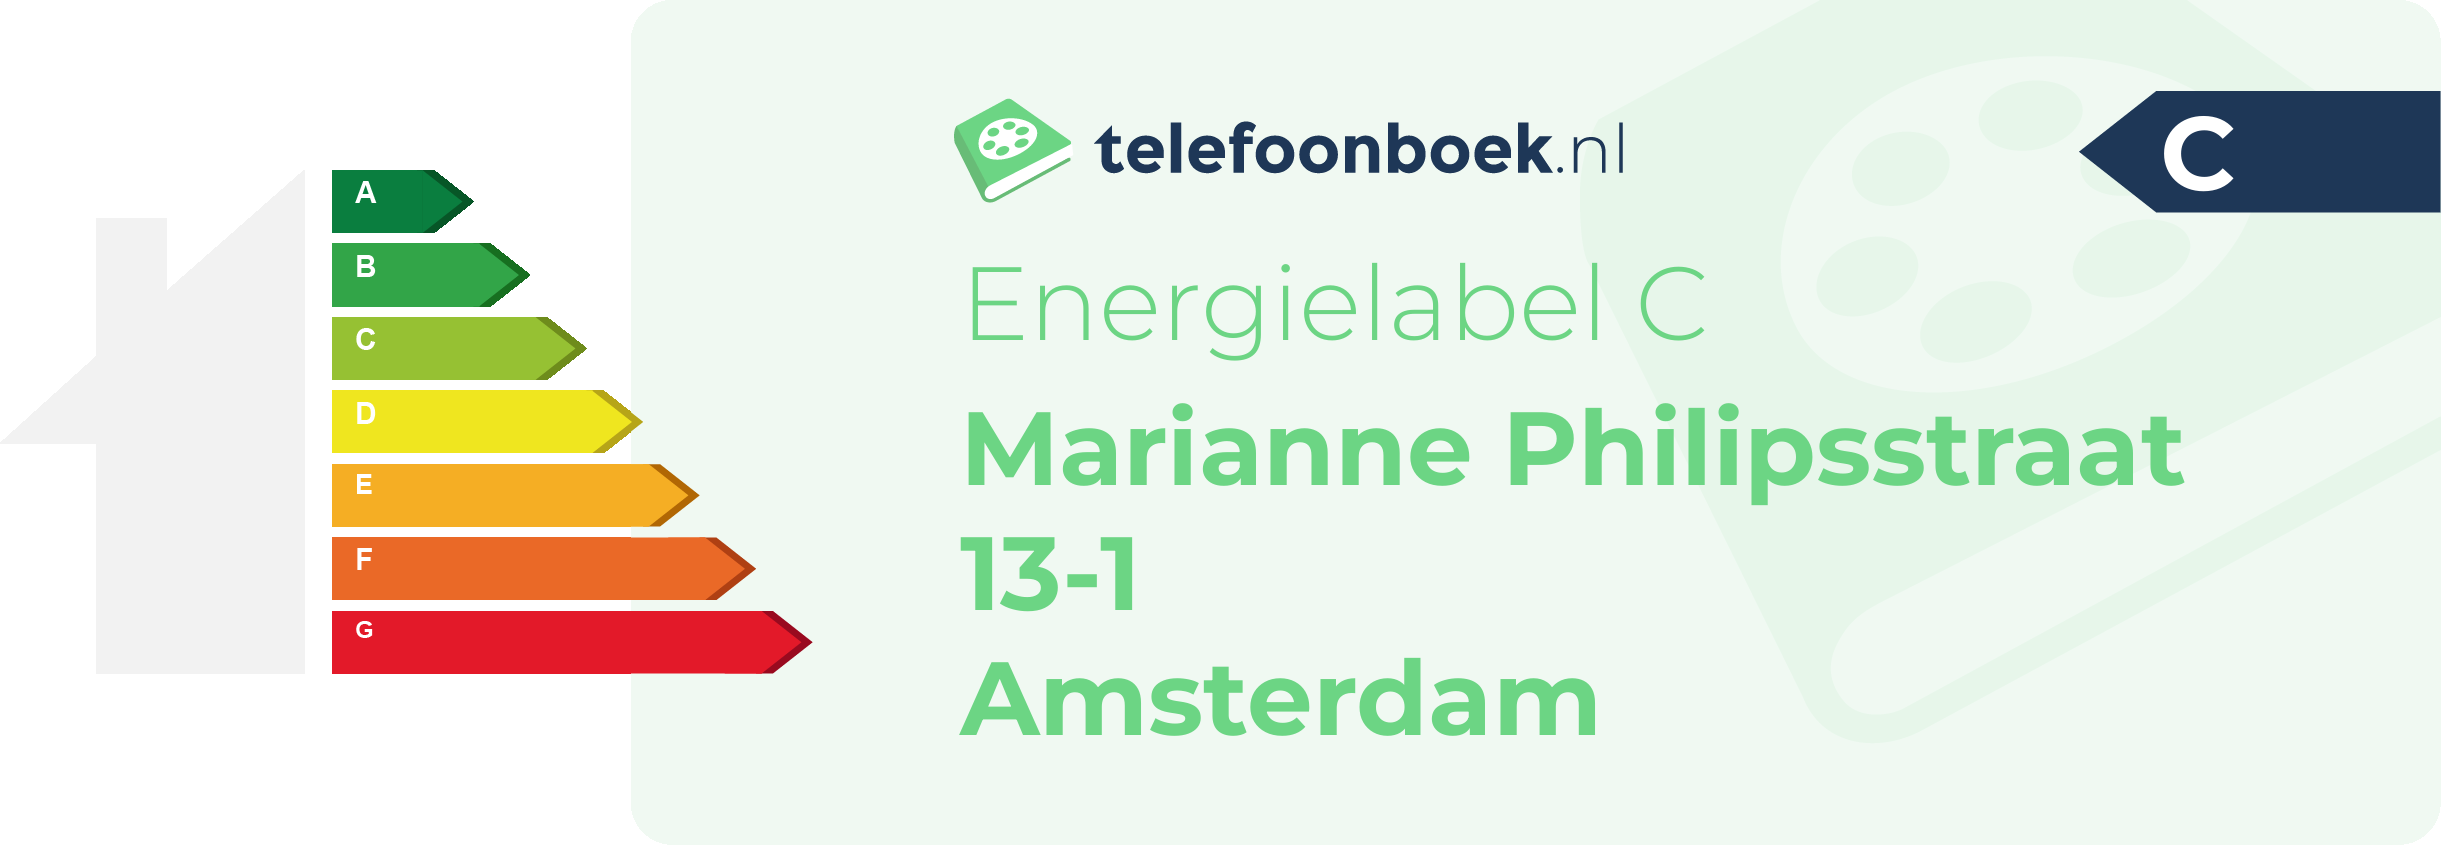 Energielabel Marianne Philipsstraat 13-1 Amsterdam